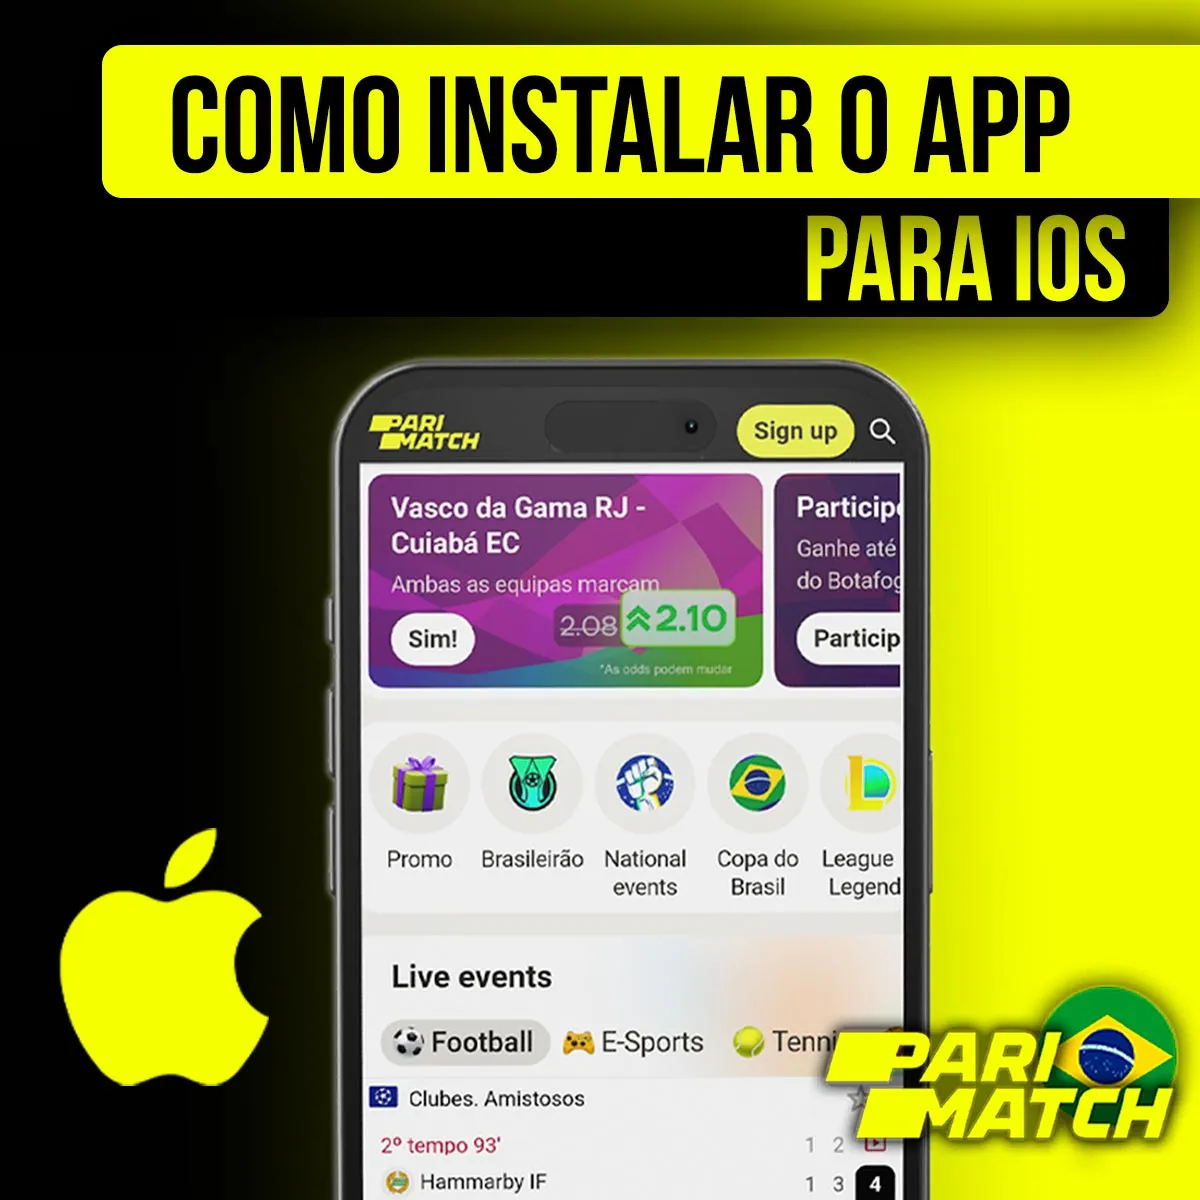 Aplicativo móvel para iOS da casa de apostas Parimatch no Brasil